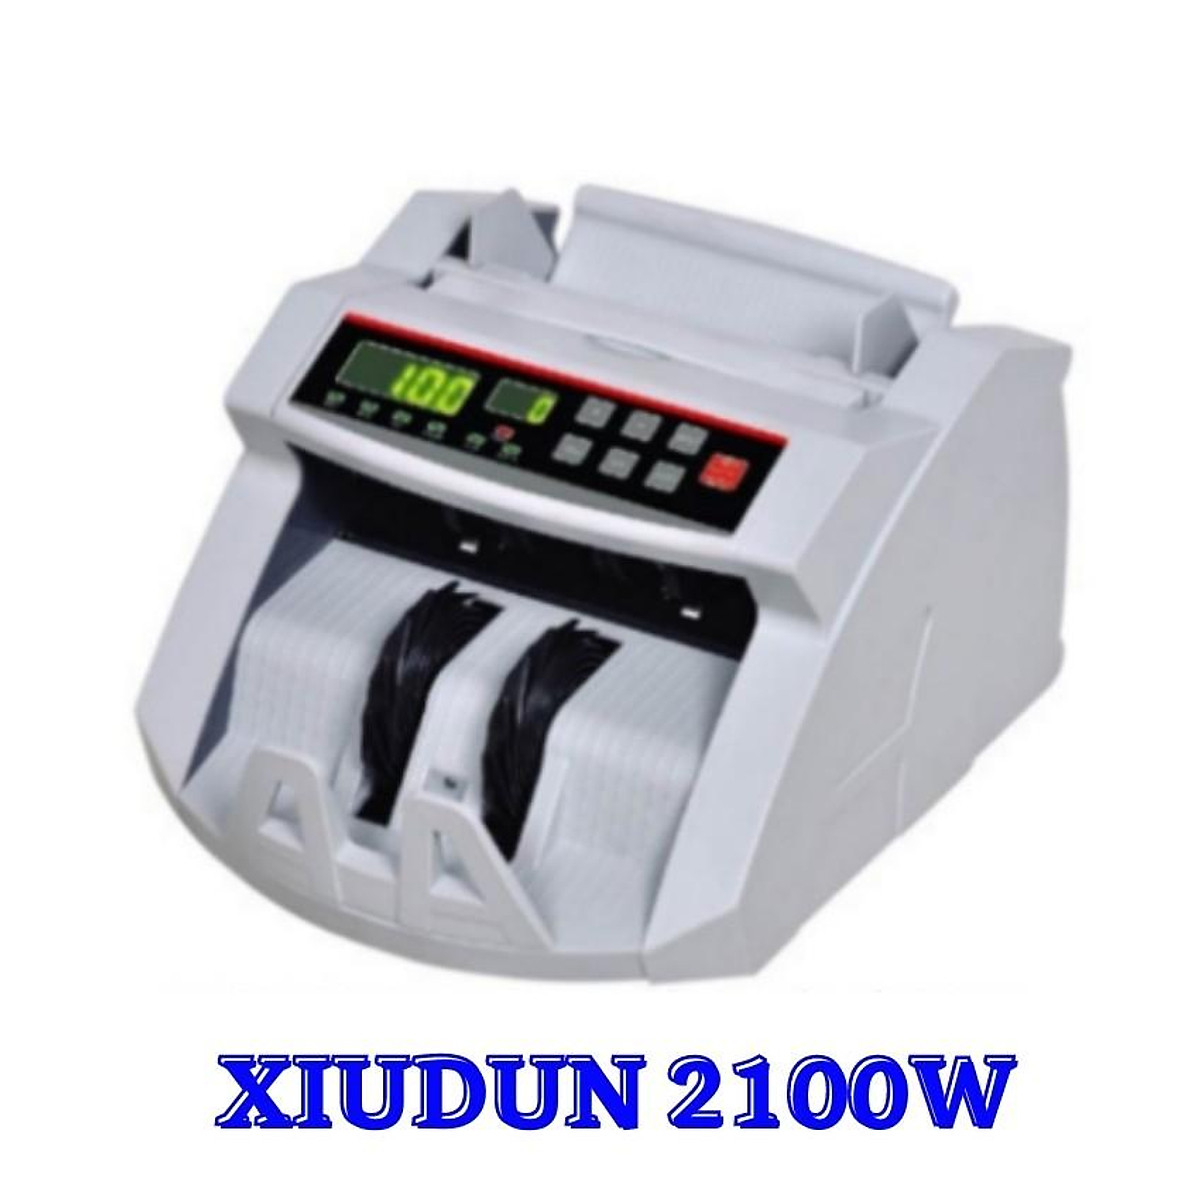 Tổng hợp các máy đếm tiền Xiudun giá rẻ chính hãng hot nhất hiện nay